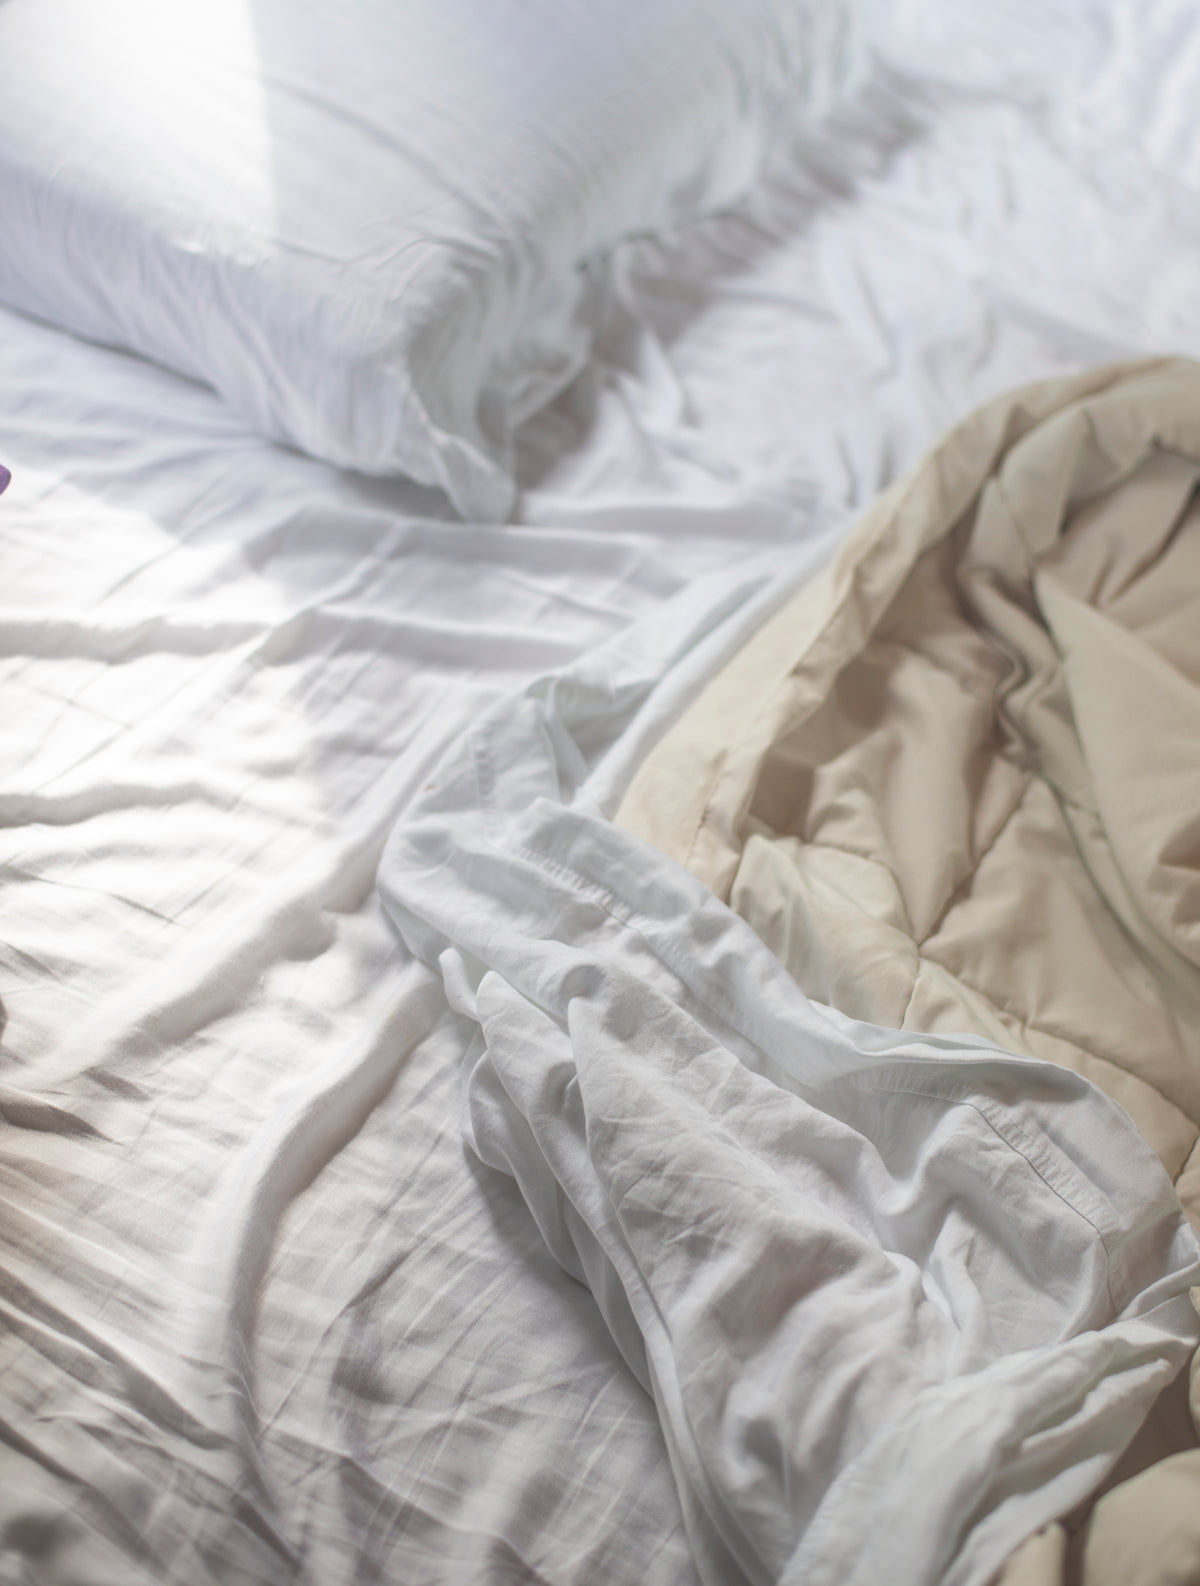 白色的枕头和床单躺在没有整理的床上